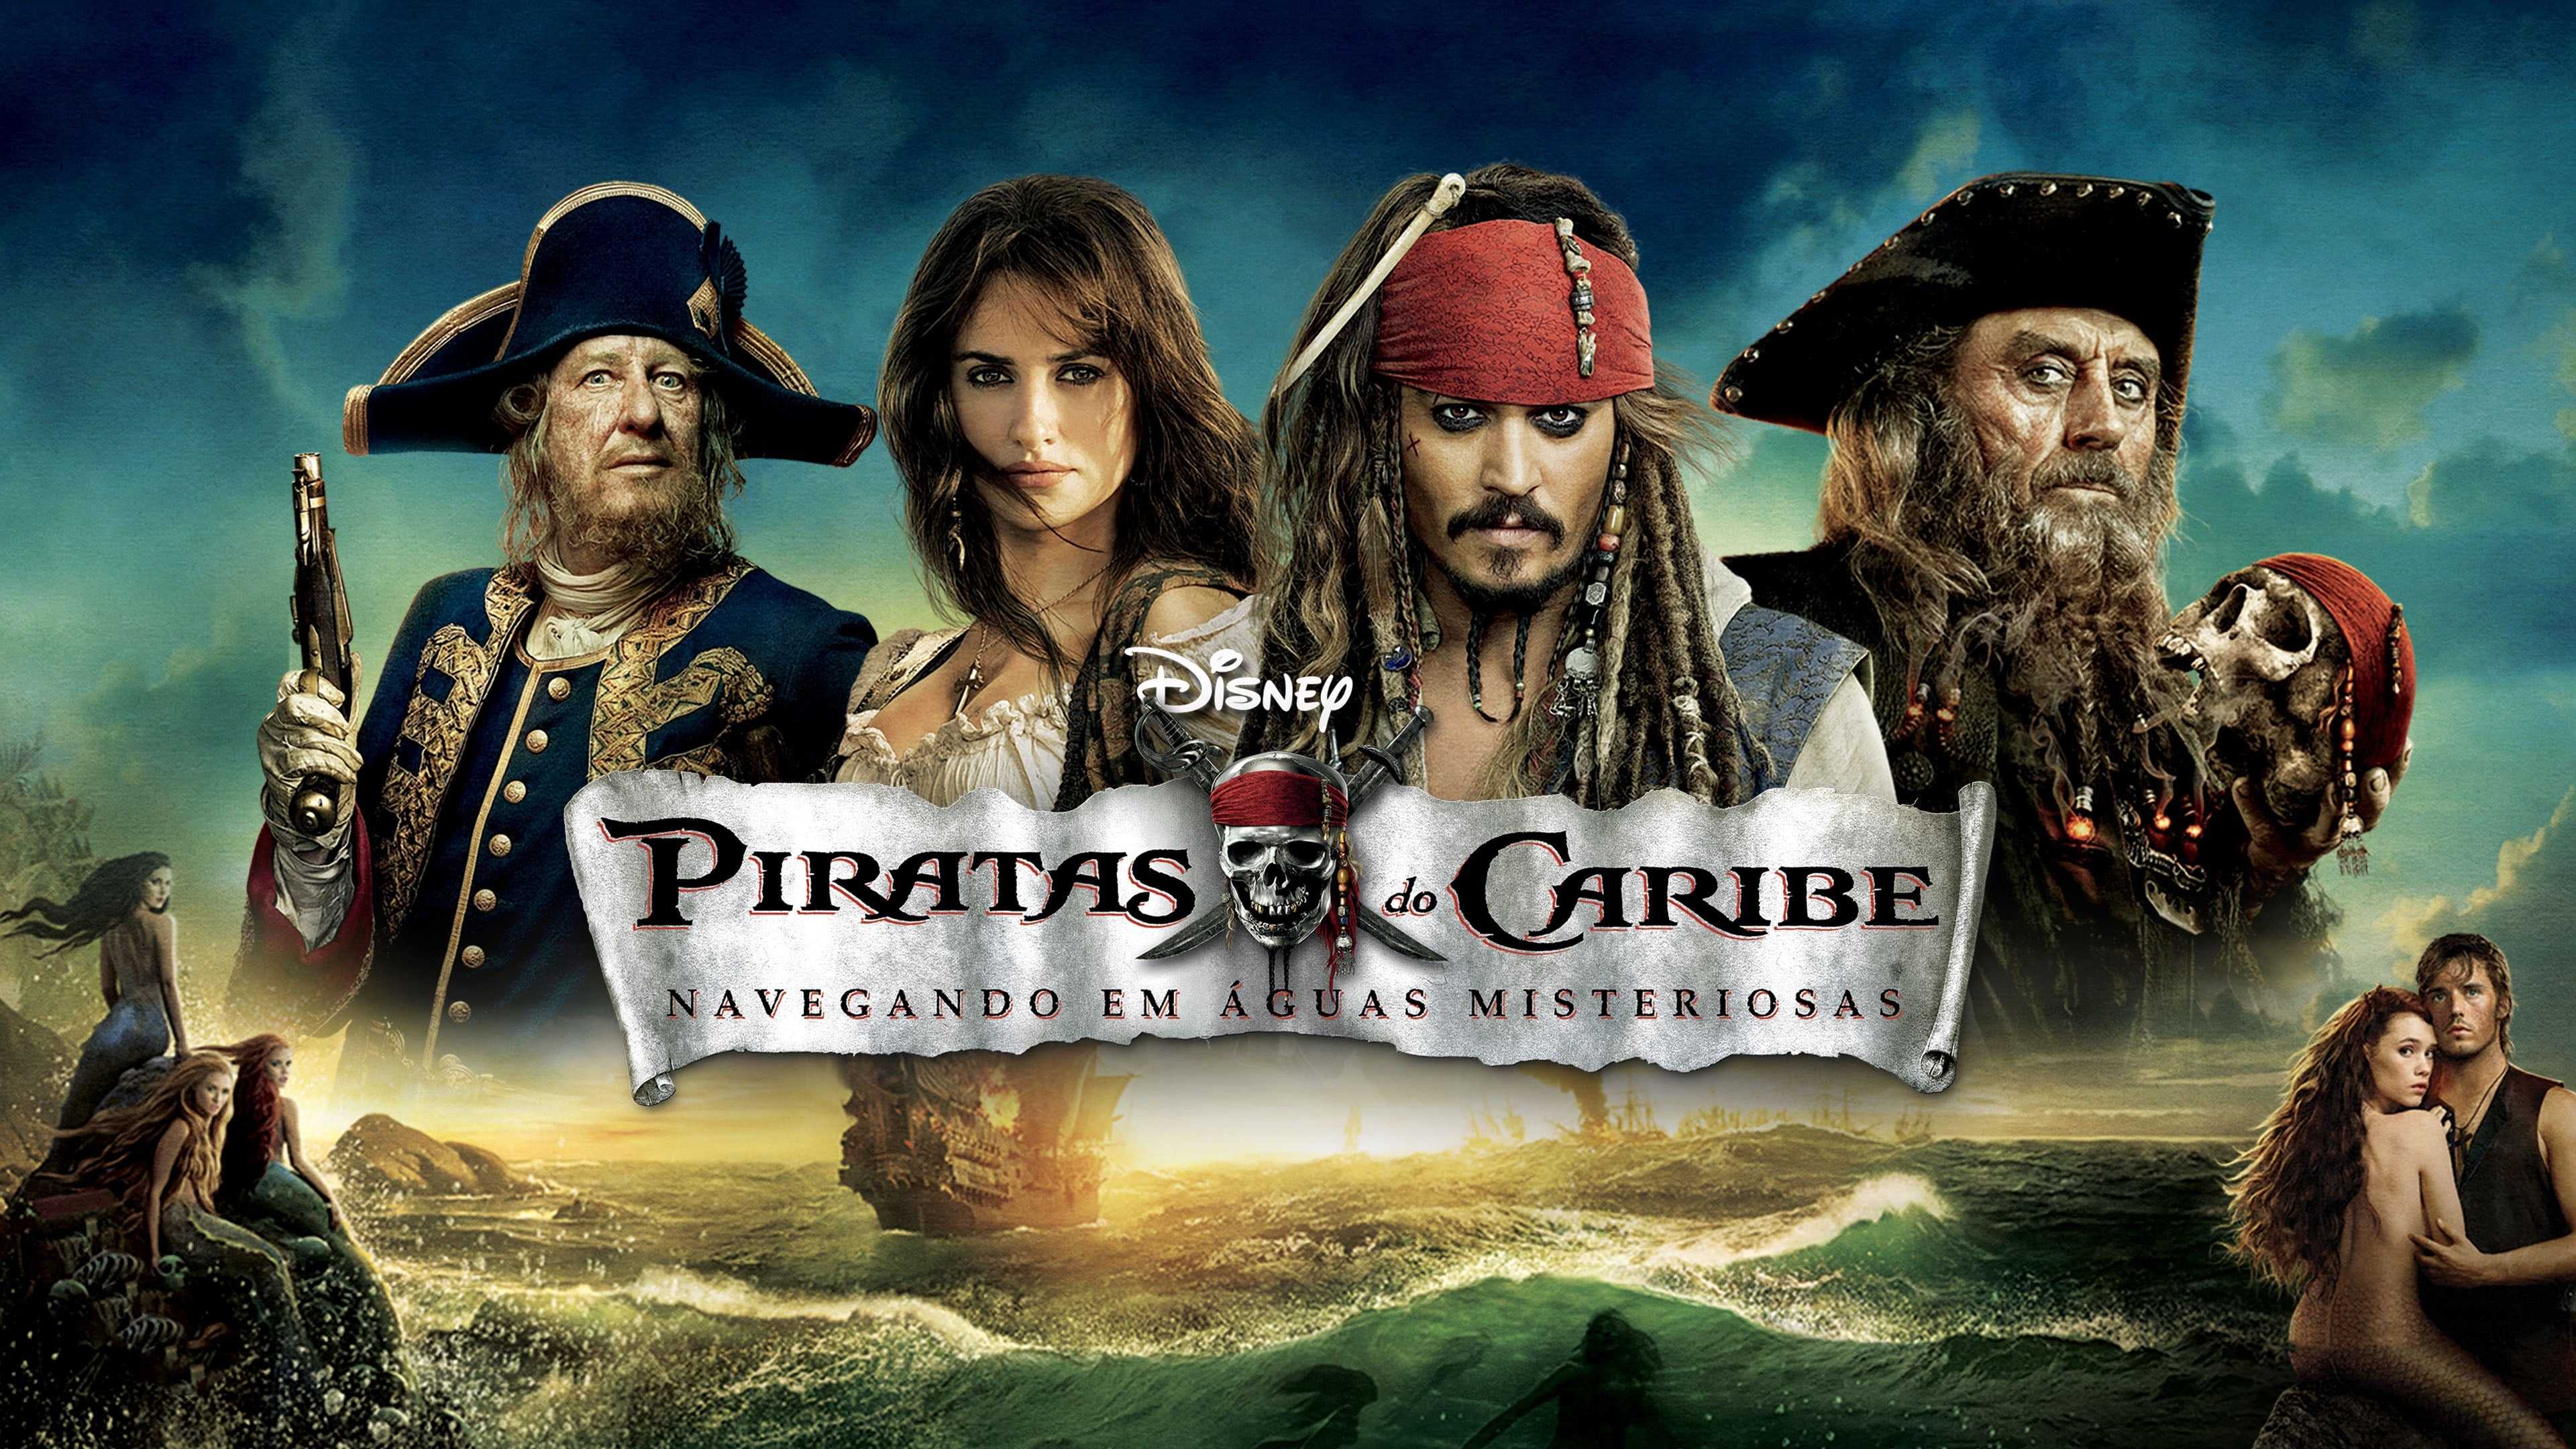 Пираты карибского моря сколько частей по порядку. Пираты Карибского моря 4 на странных берегах. Pirates of the Caribbean нас таранных берегах.